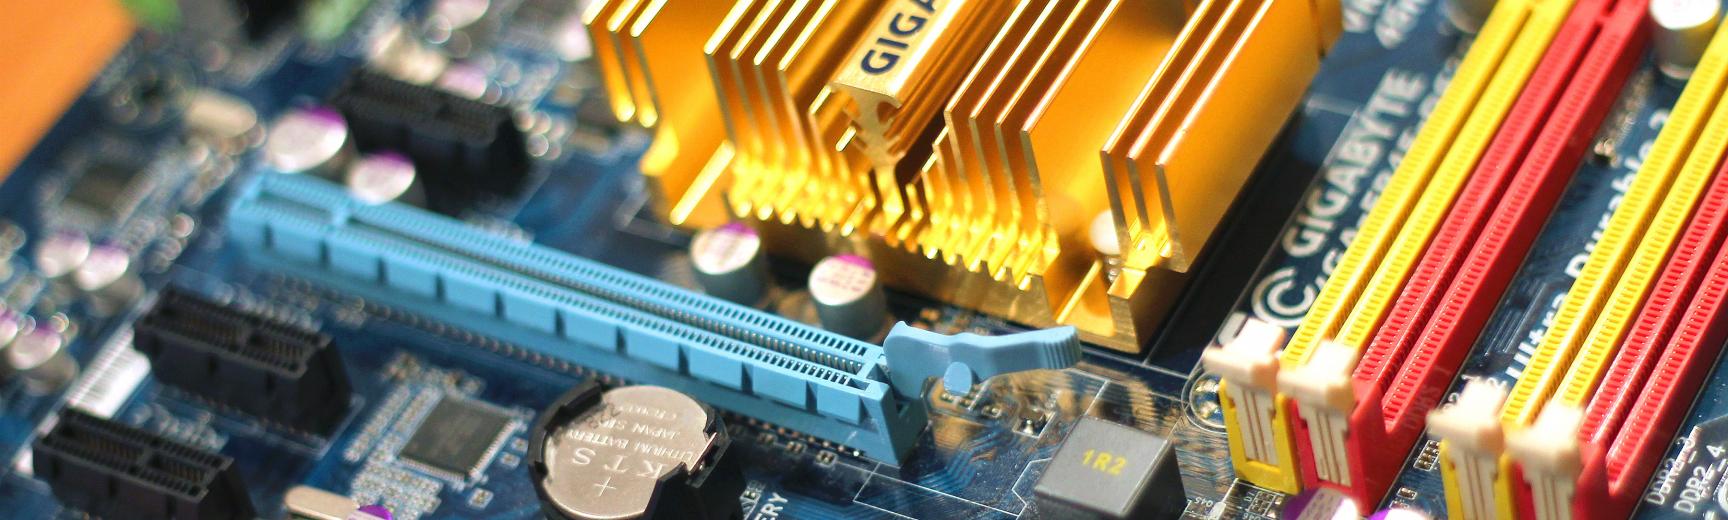 technology computer chips gigabyte